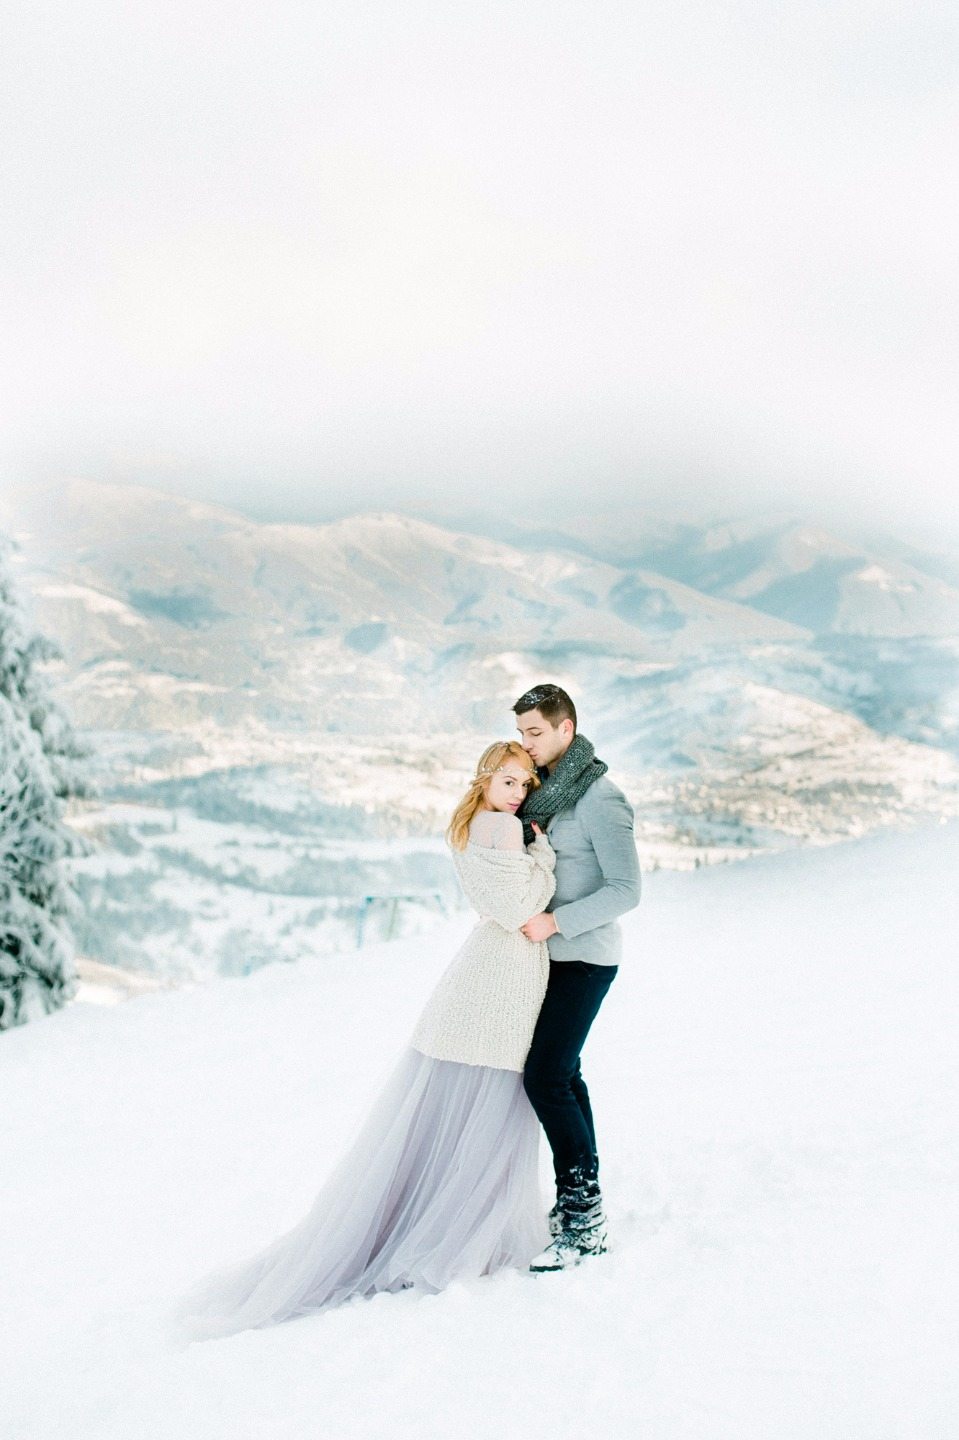 Предложение на высоте 1300 м над уровнем моря: love-story Андрея и Карины